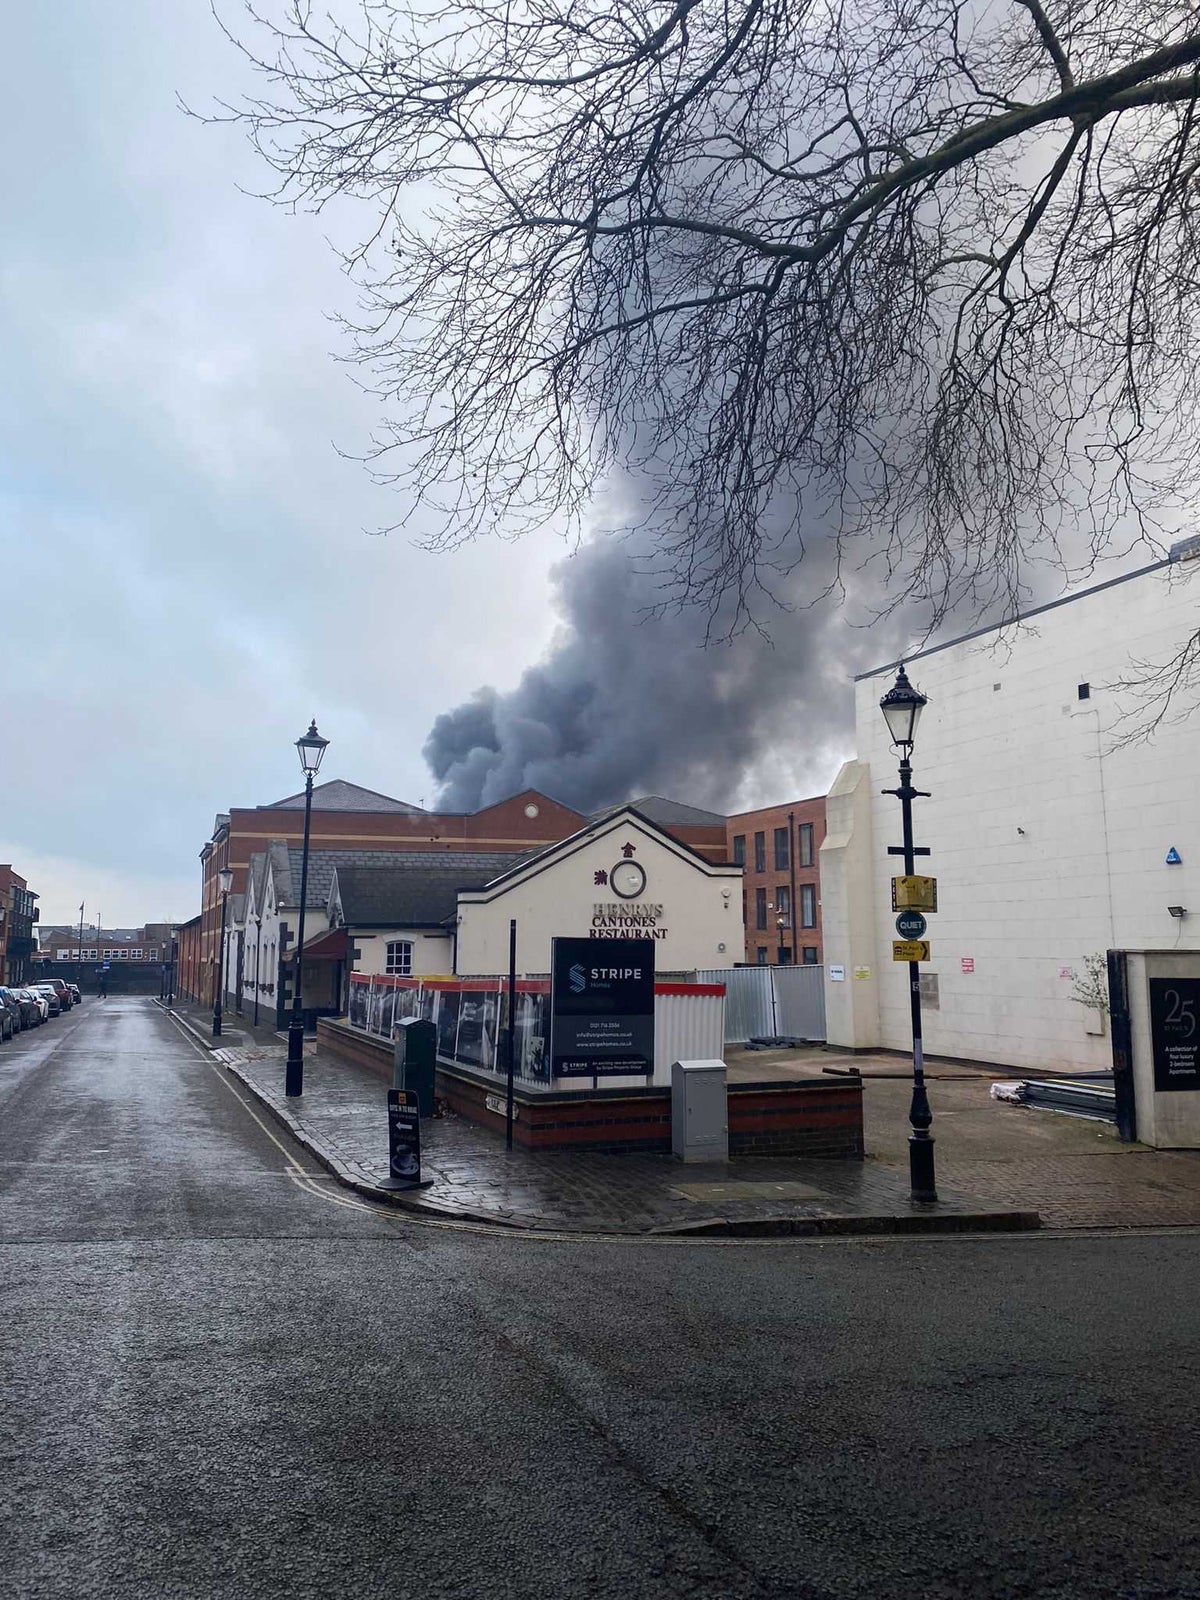 Smoke seen across Birmingham as huge fire breaks out